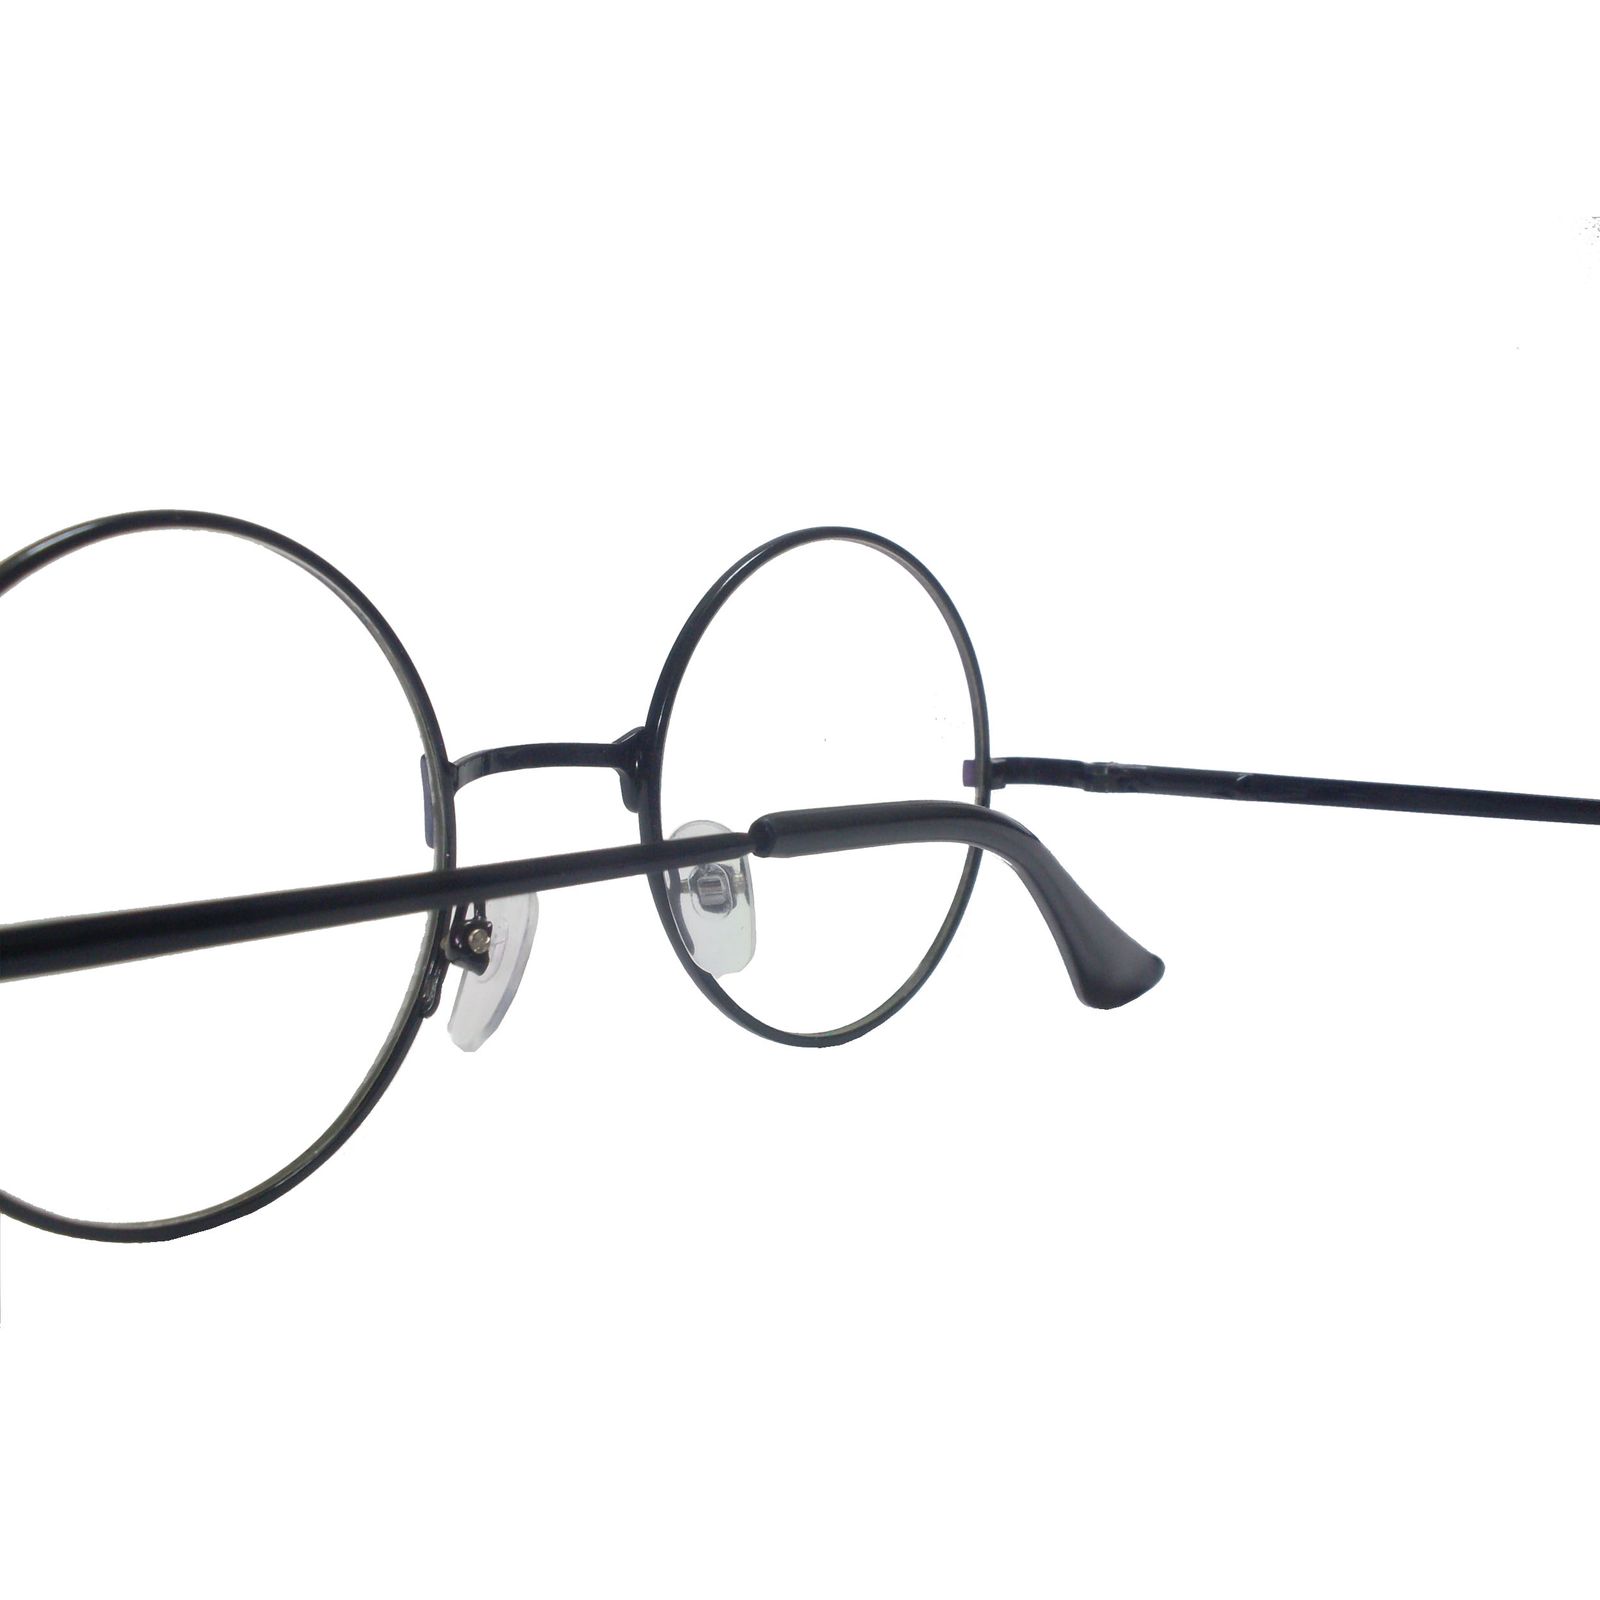 فریم عینک طبی مدل T 150032 -  - 4